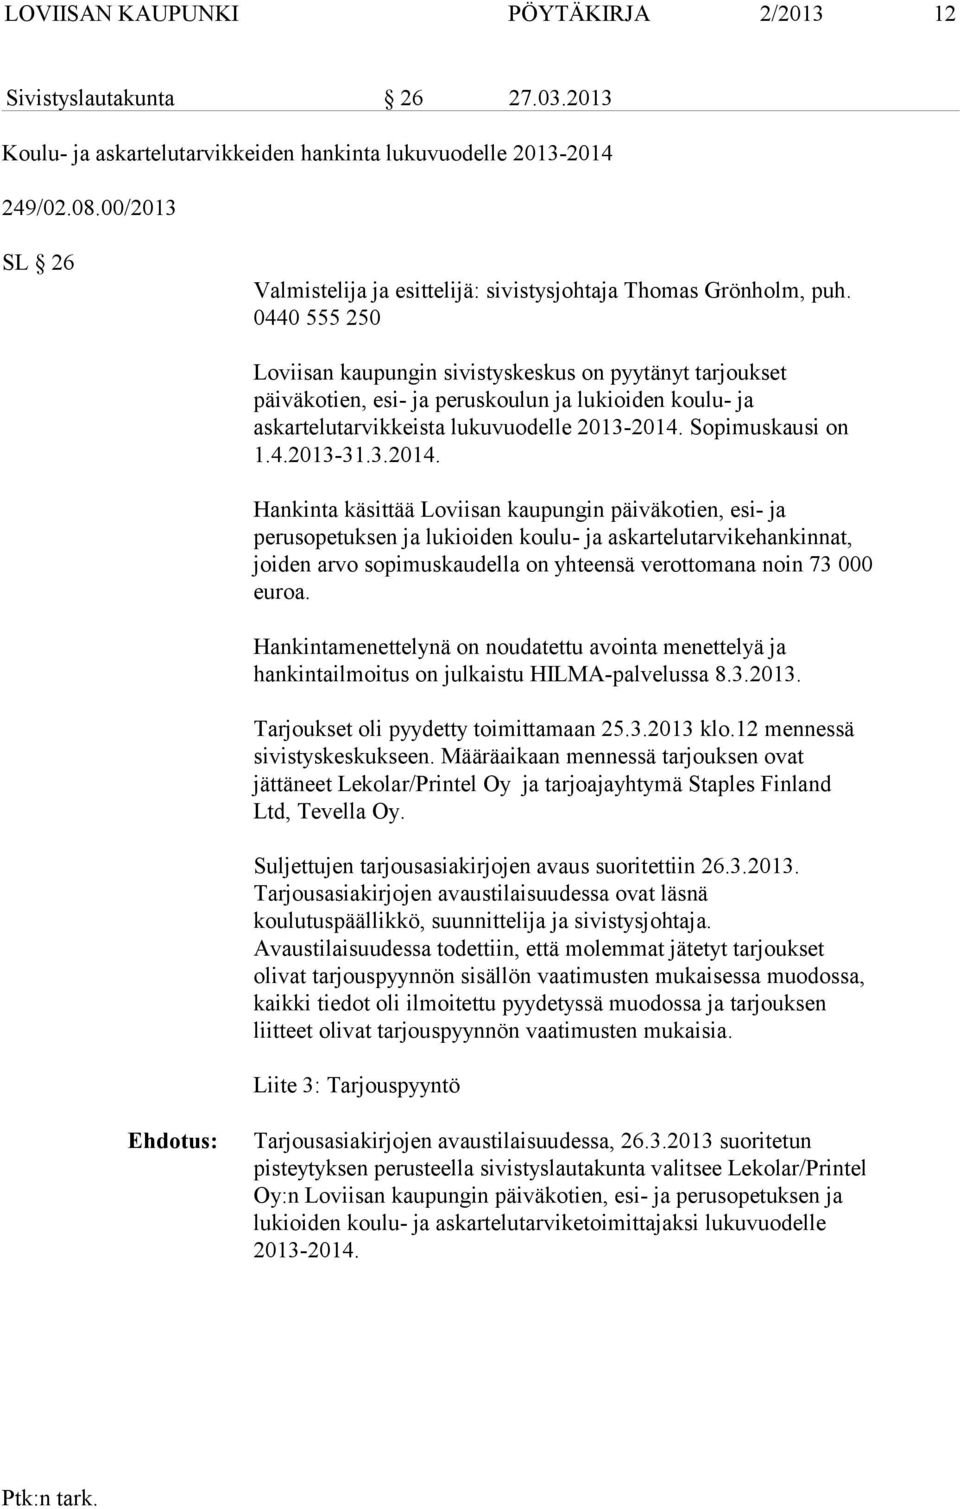 0440 555 250 Loviisan kaupungin sivistyskeskus on pyytänyt tarjoukset päiväkotien, esi- ja peruskoulun ja lukioiden koulu- ja askartelutarvikkeista lukuvuodelle 2013-2014. Sopimuskausi on 1.4.2013-31.